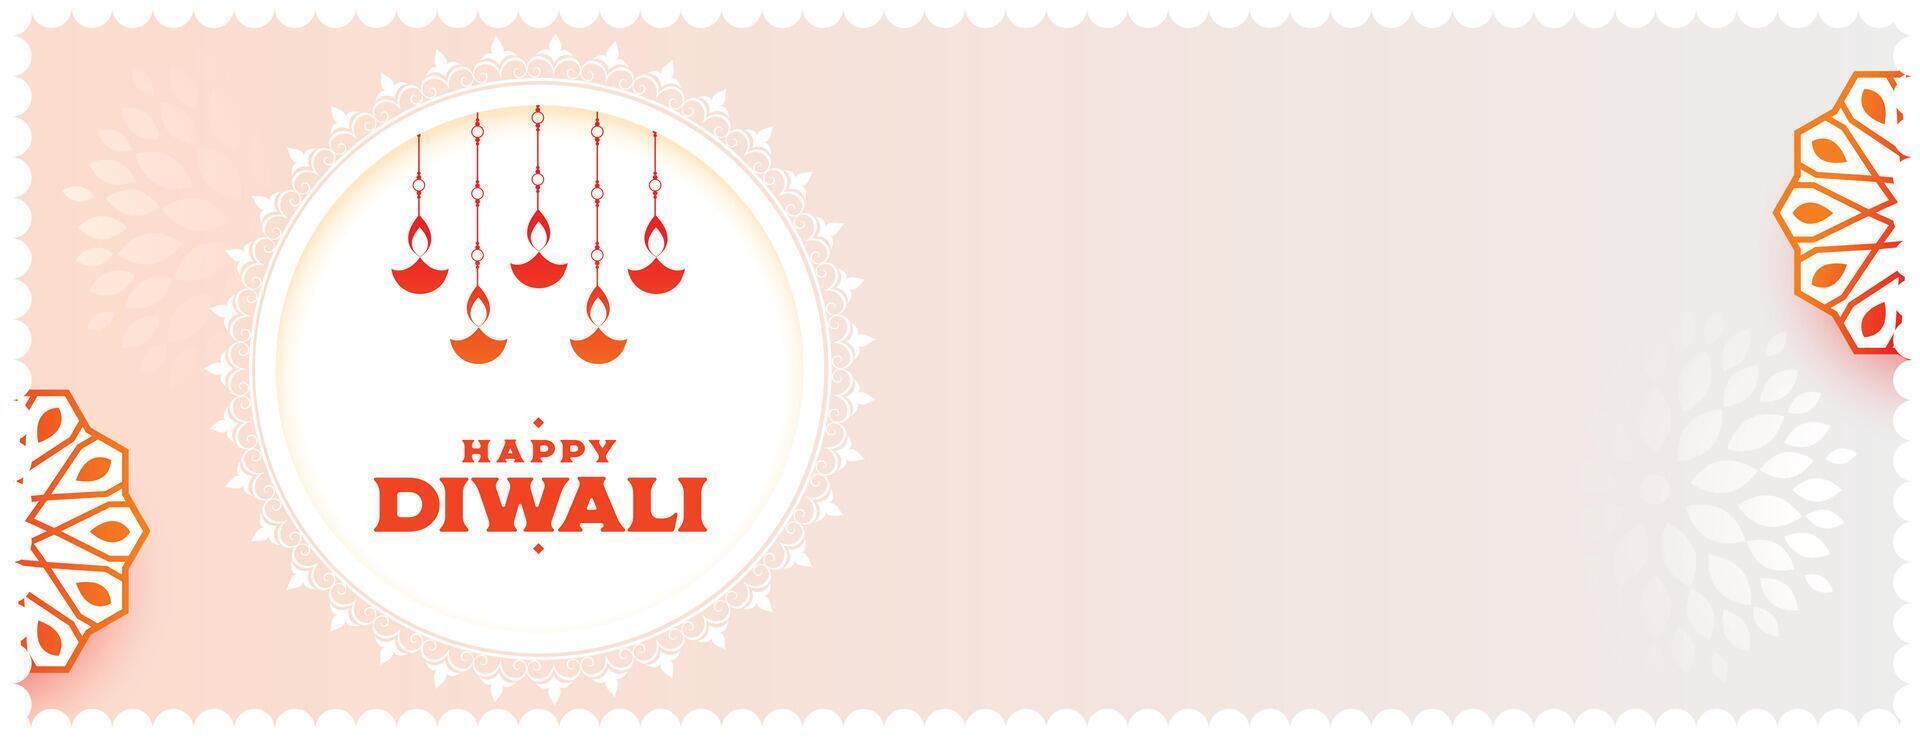 trevlig shubh diwali lyckönskningar baner med hängande diya design vektor